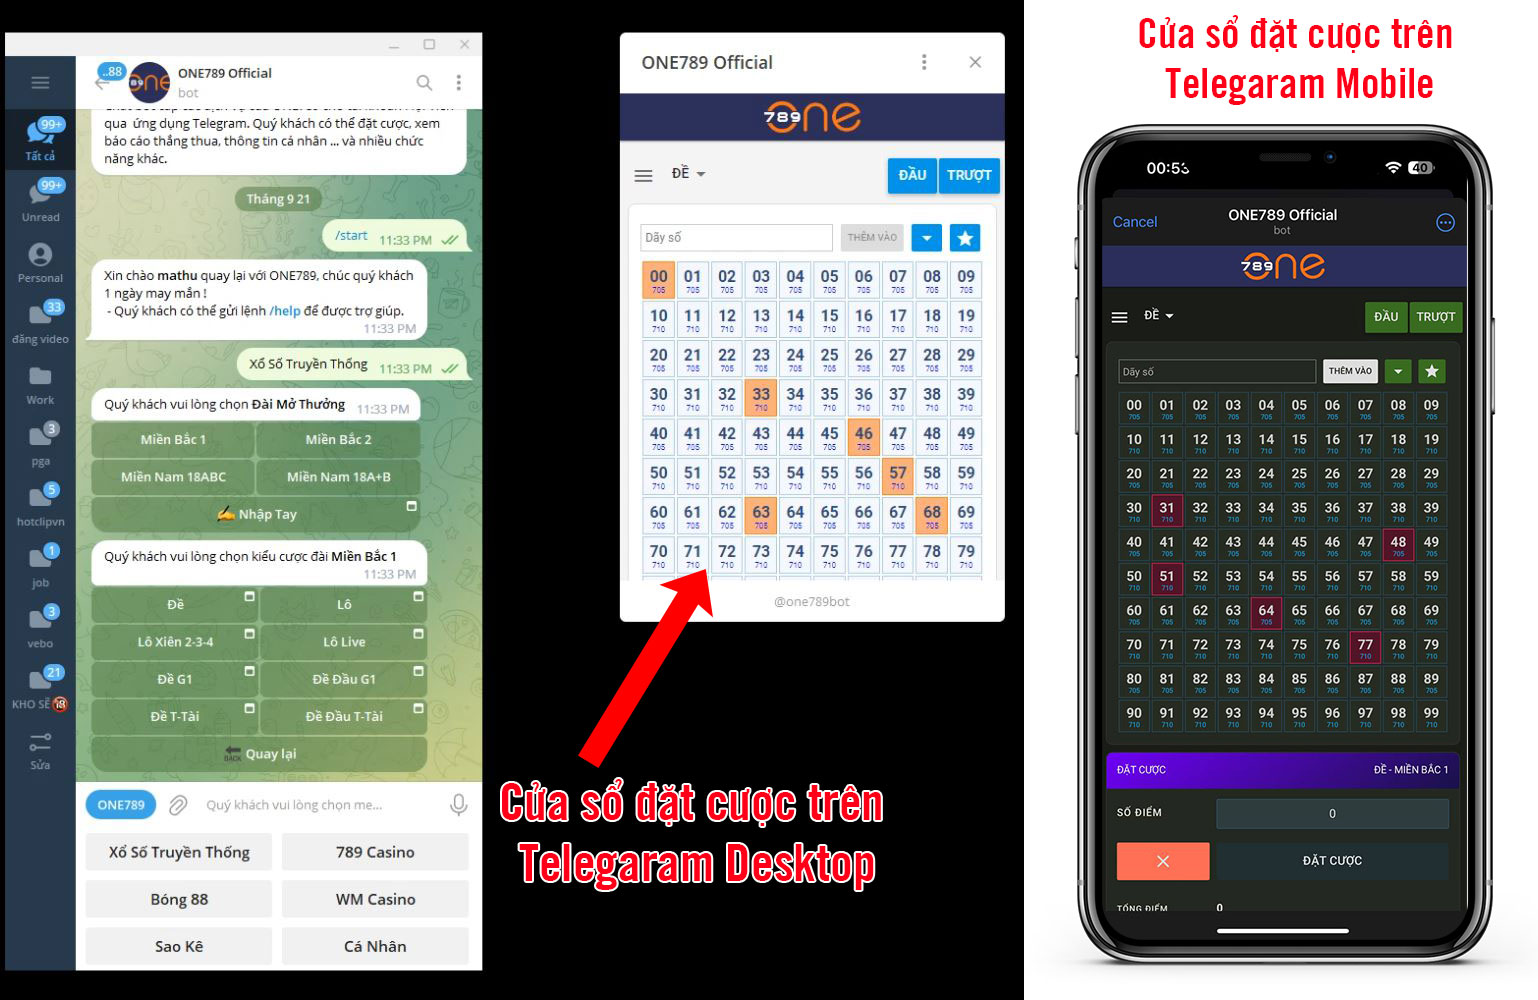 cua-so-dat-cuoc-tren-telegram-desktop-va-mobile